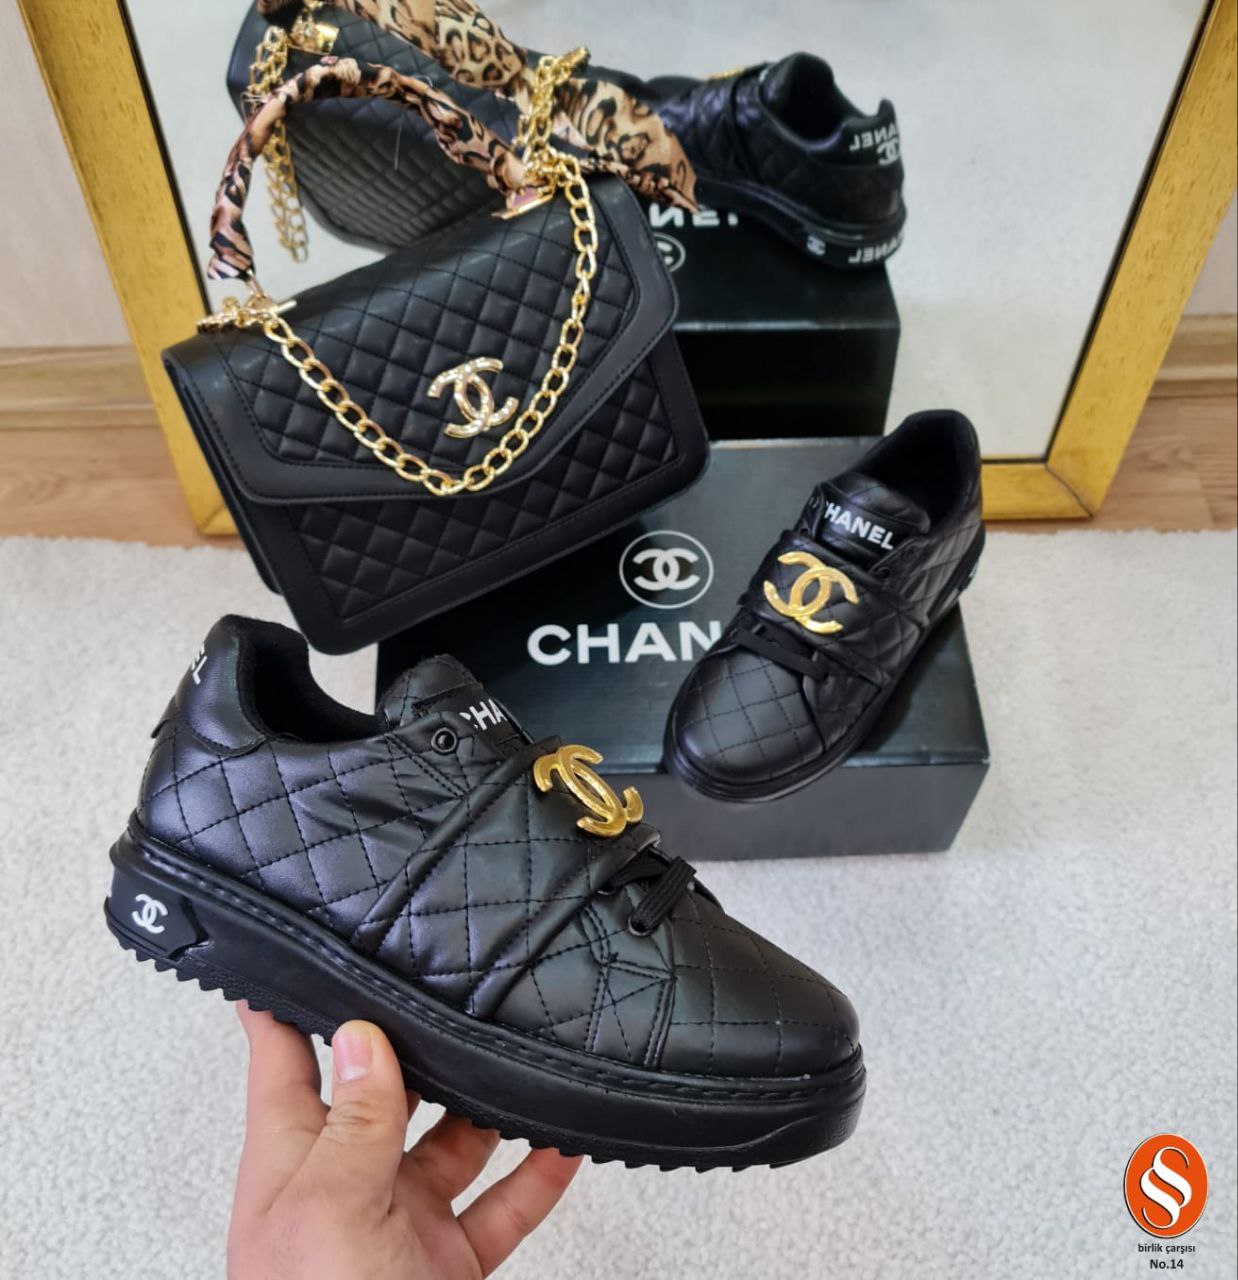 Chanel sneakers and handbag